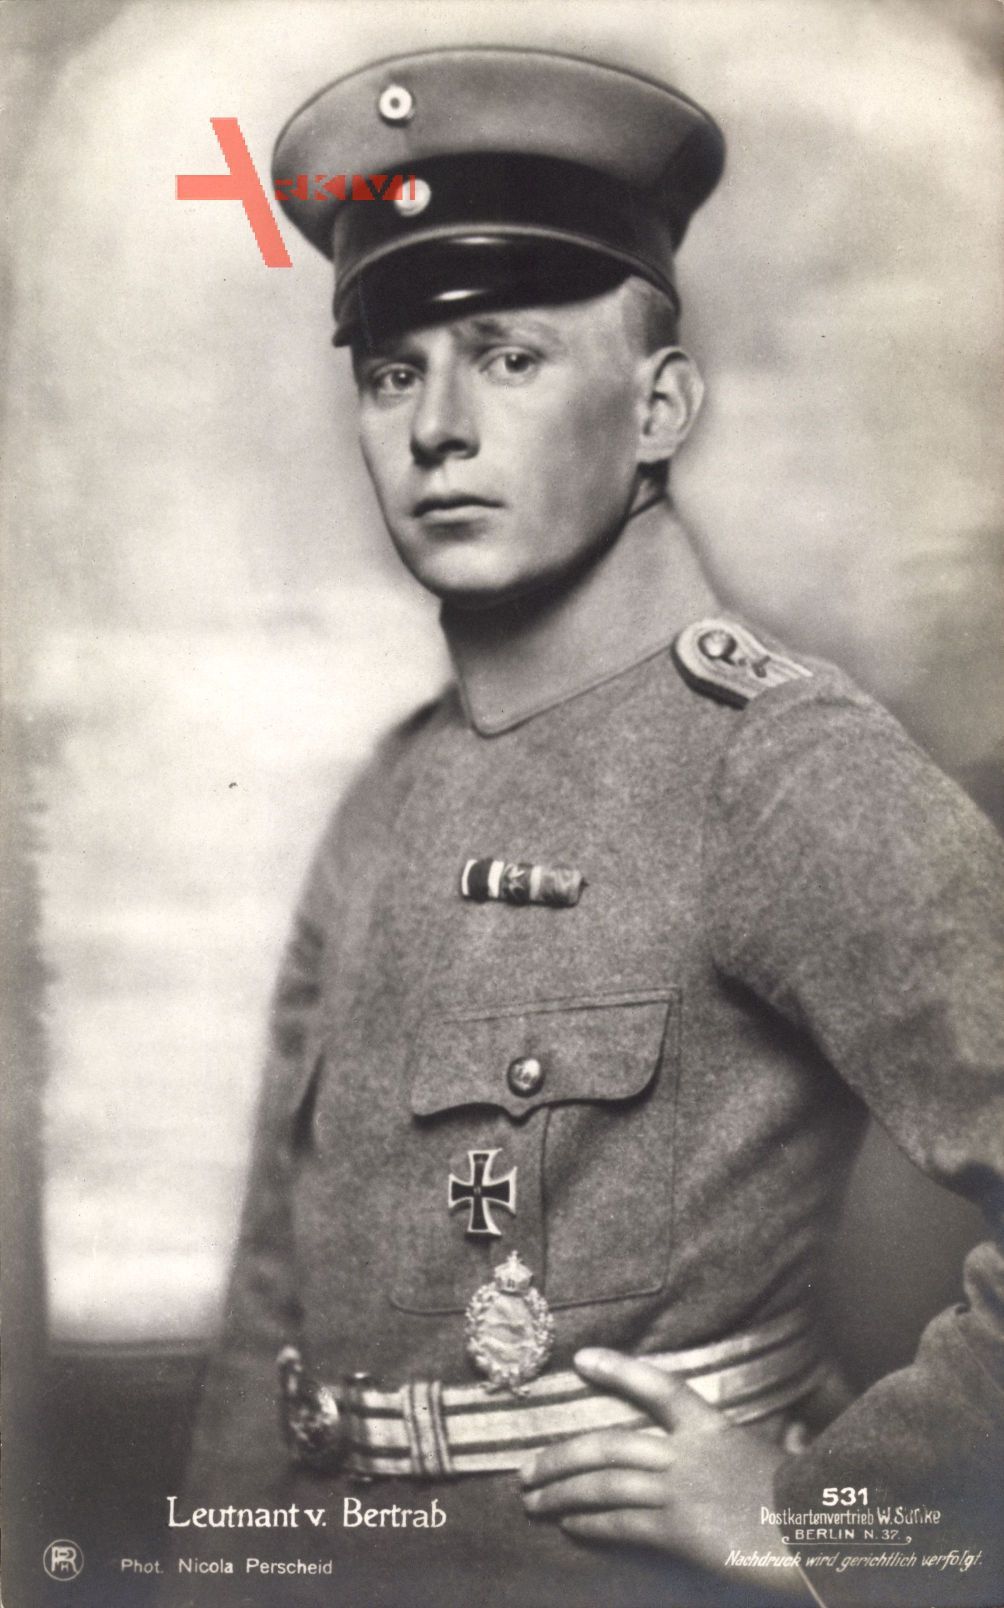 Leutnant Joachim von Bertrab, Uniform, Schirmmütze, Sanke 531